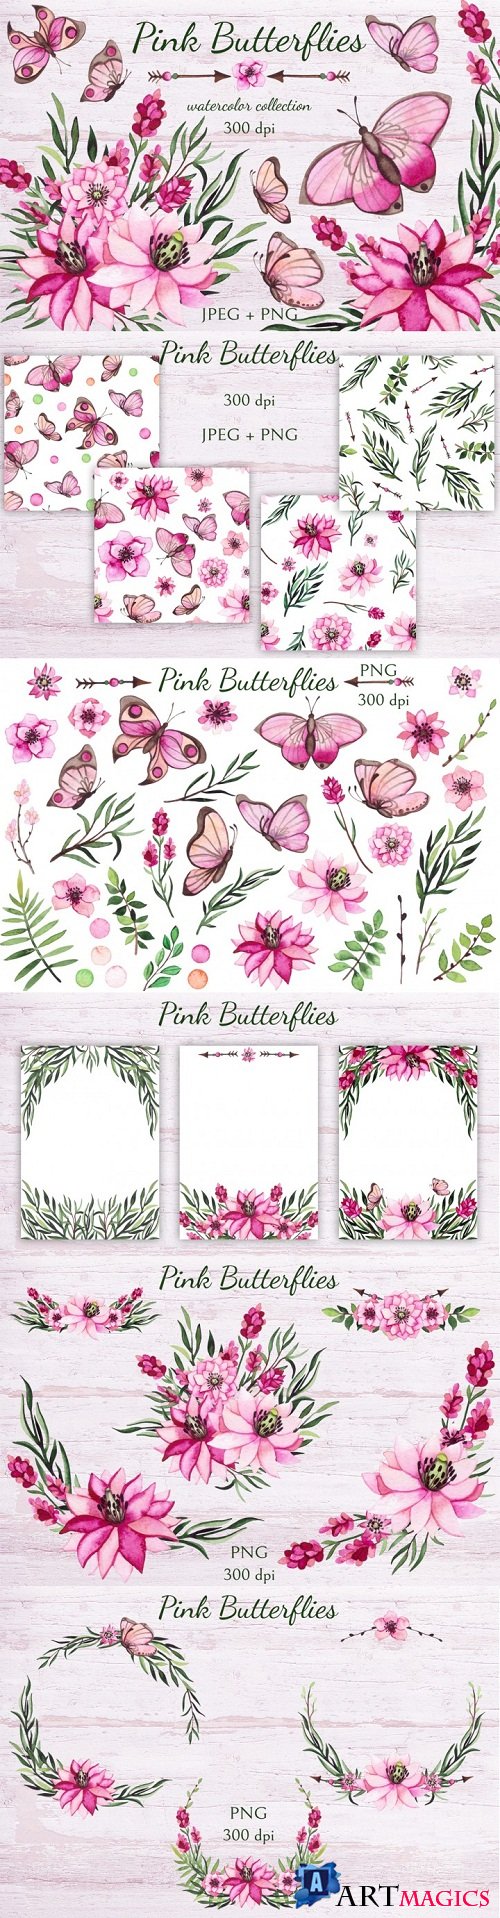 Thehungryjpeg - Pink Butterflies - 3458026